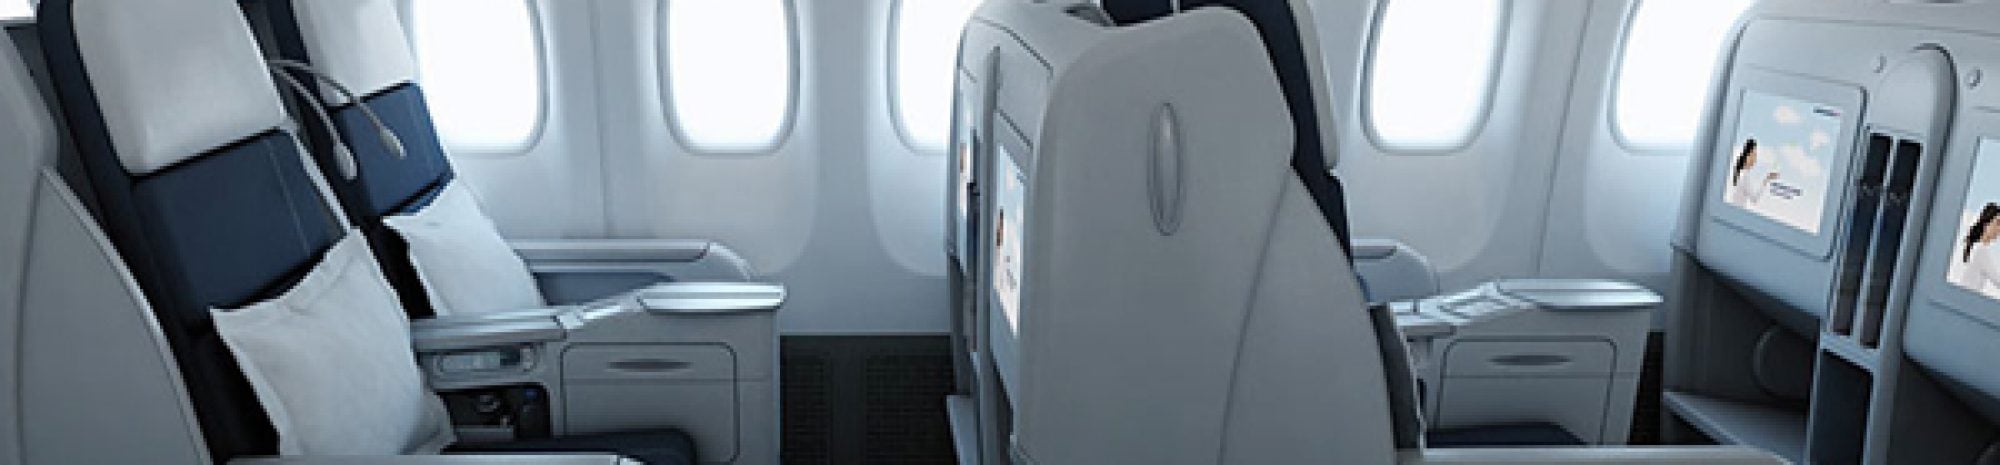 VENTE FLASH : voyager en classe Affaires à prix exceptionnel avec Air France et Groupe Voyages VP !